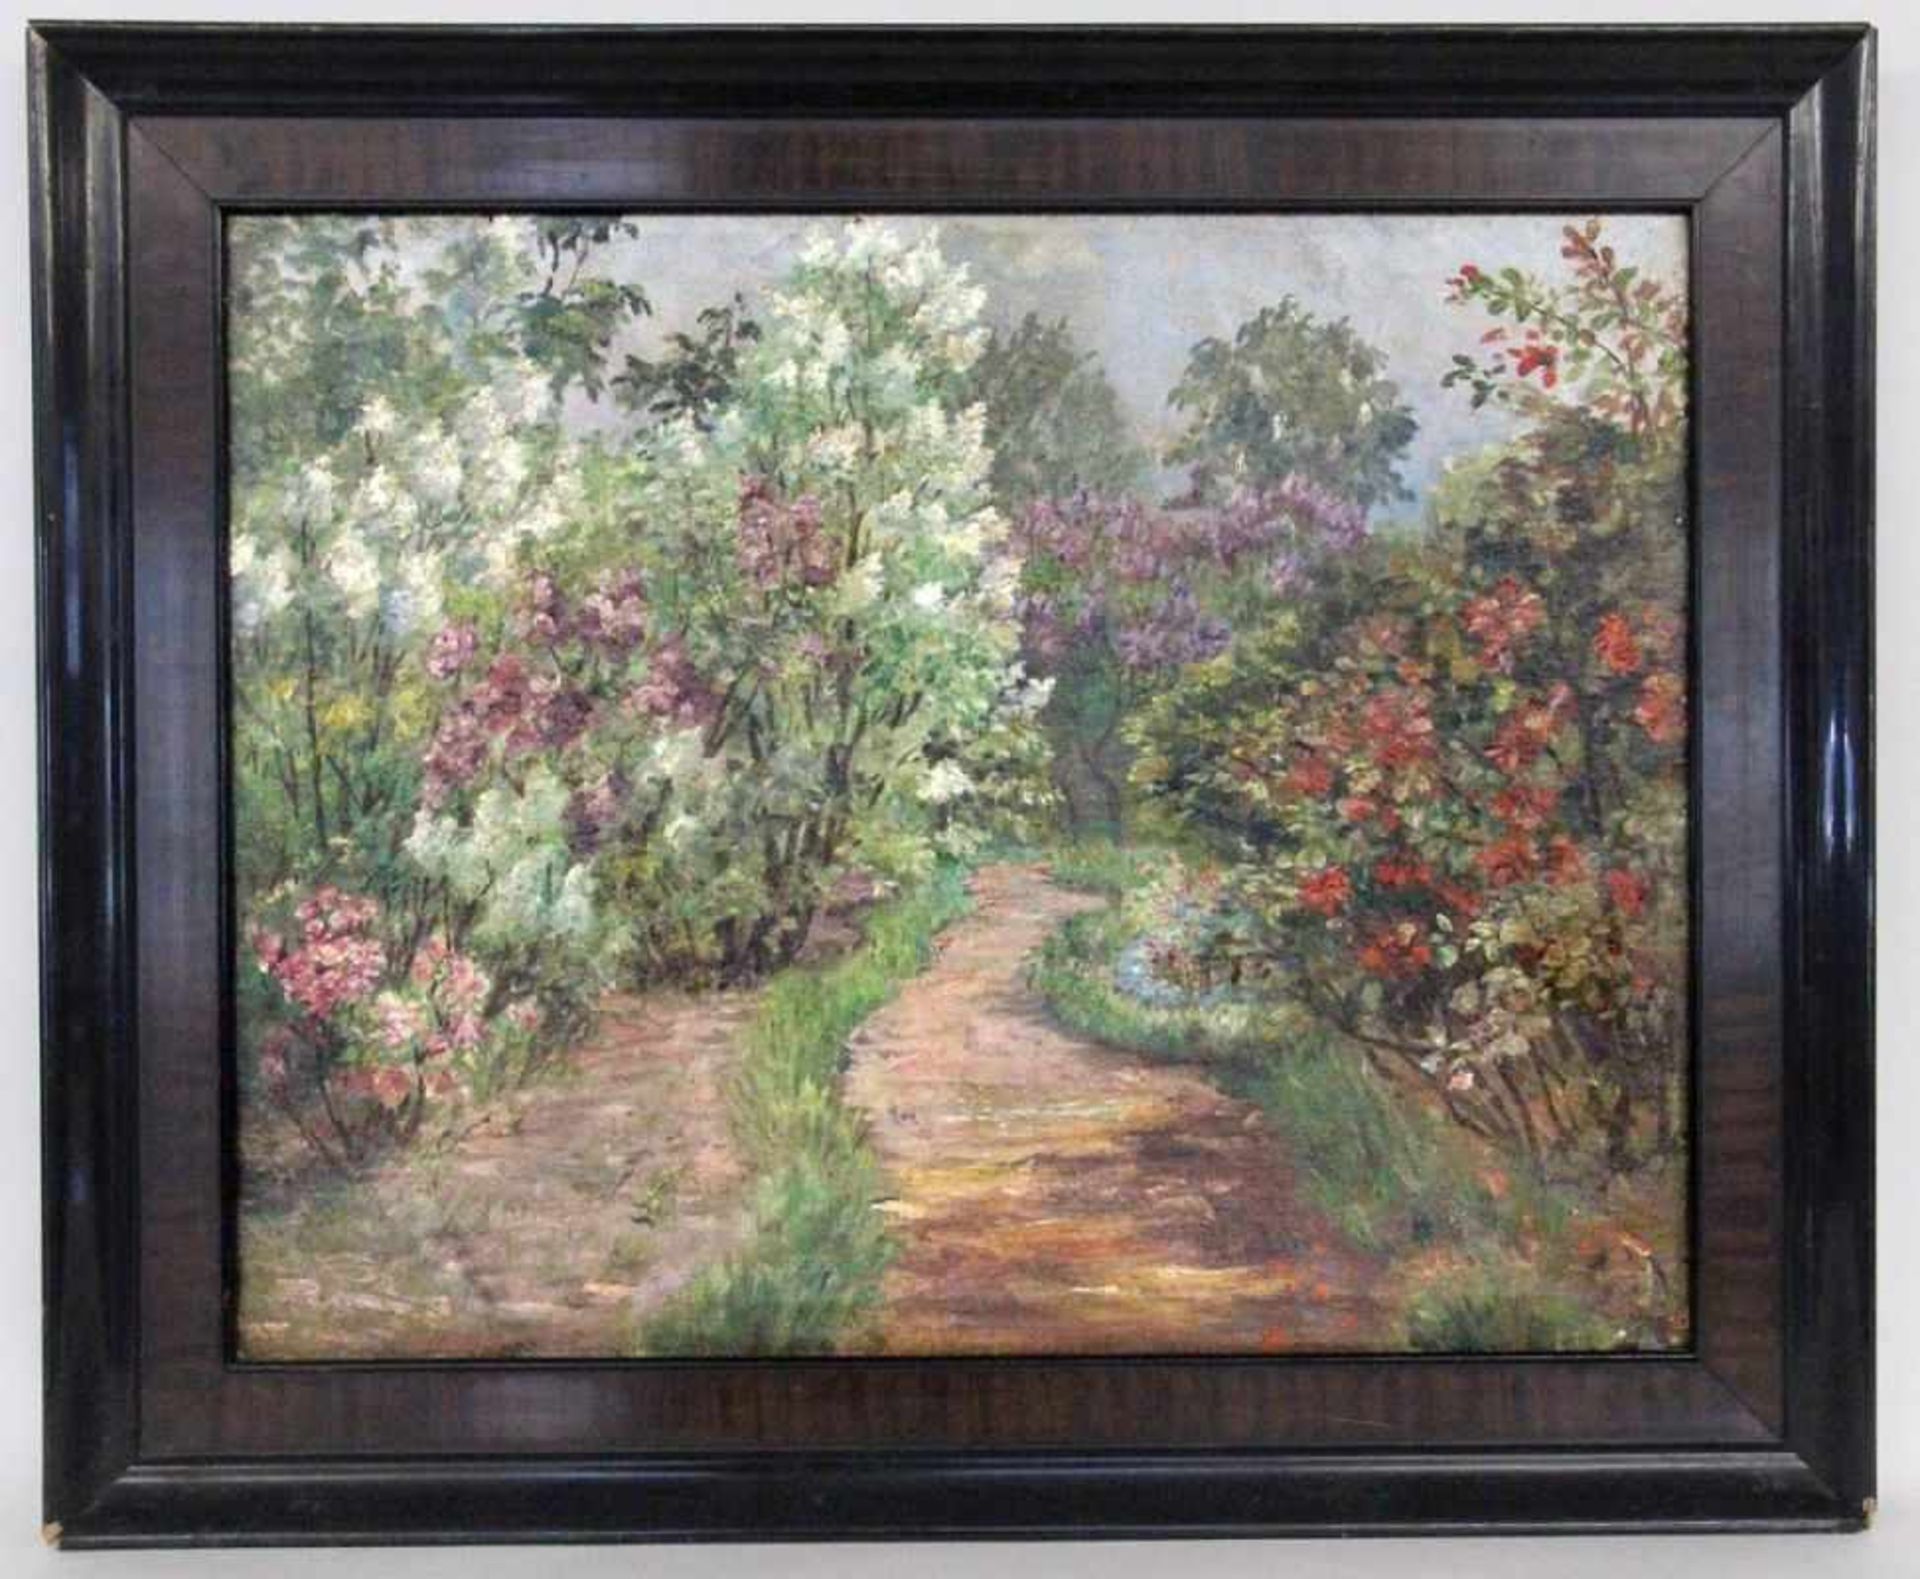 IMPRESSIONIST Frankreich um 1900 Blühende Gartenlandschaft. Öl/Lwd., 51x63,5cm, Ra. Kleine